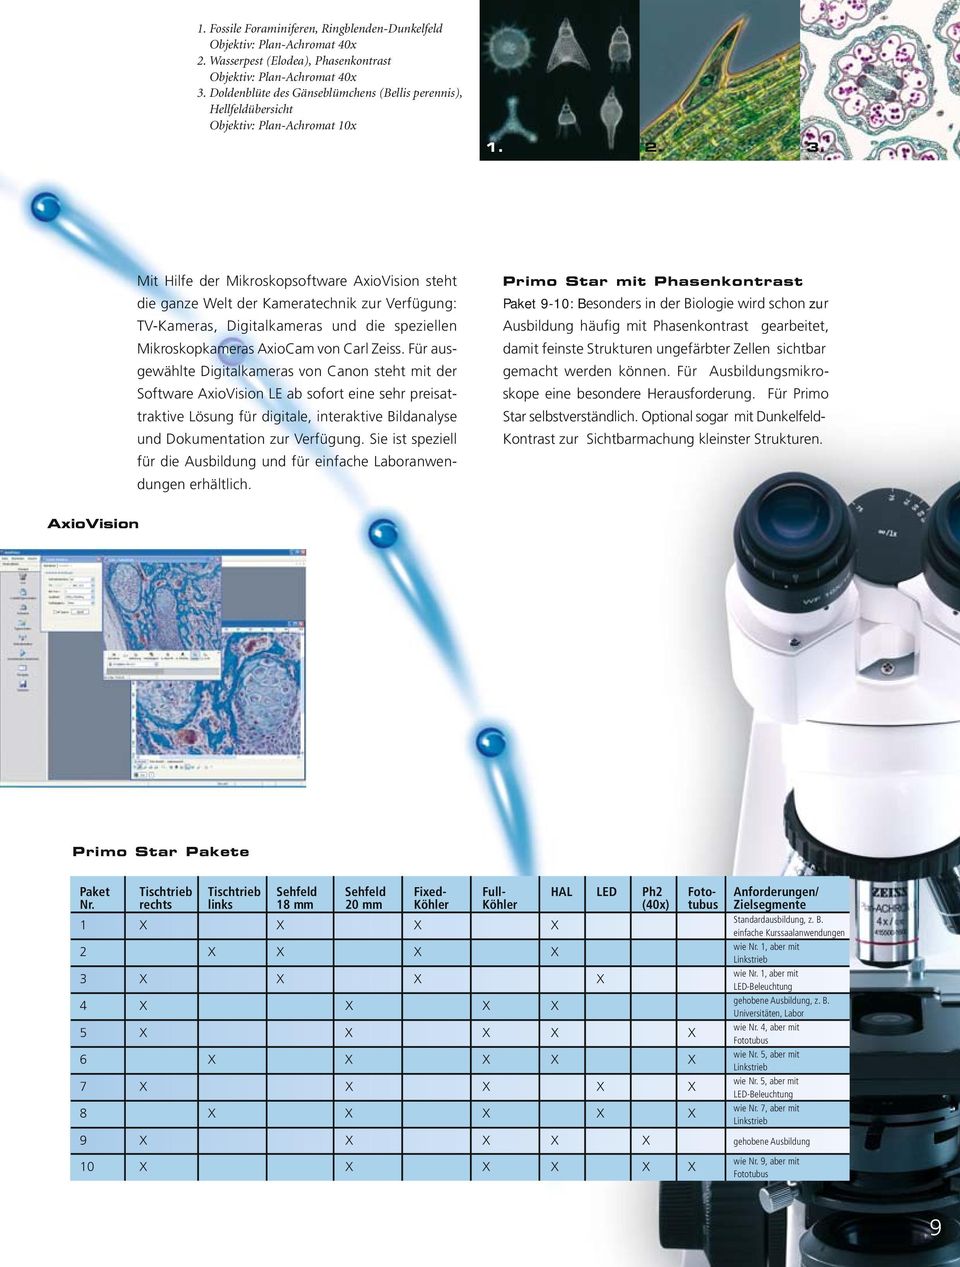 Mit Hilfe der Mikroskopsoftware AxioVision steht die ganze Welt der Kameratechnik zur Verfügung: TV-Kameras, Digitalkameras und die speziellen Mikroskopkameras AxioCam von Carl Zeiss.